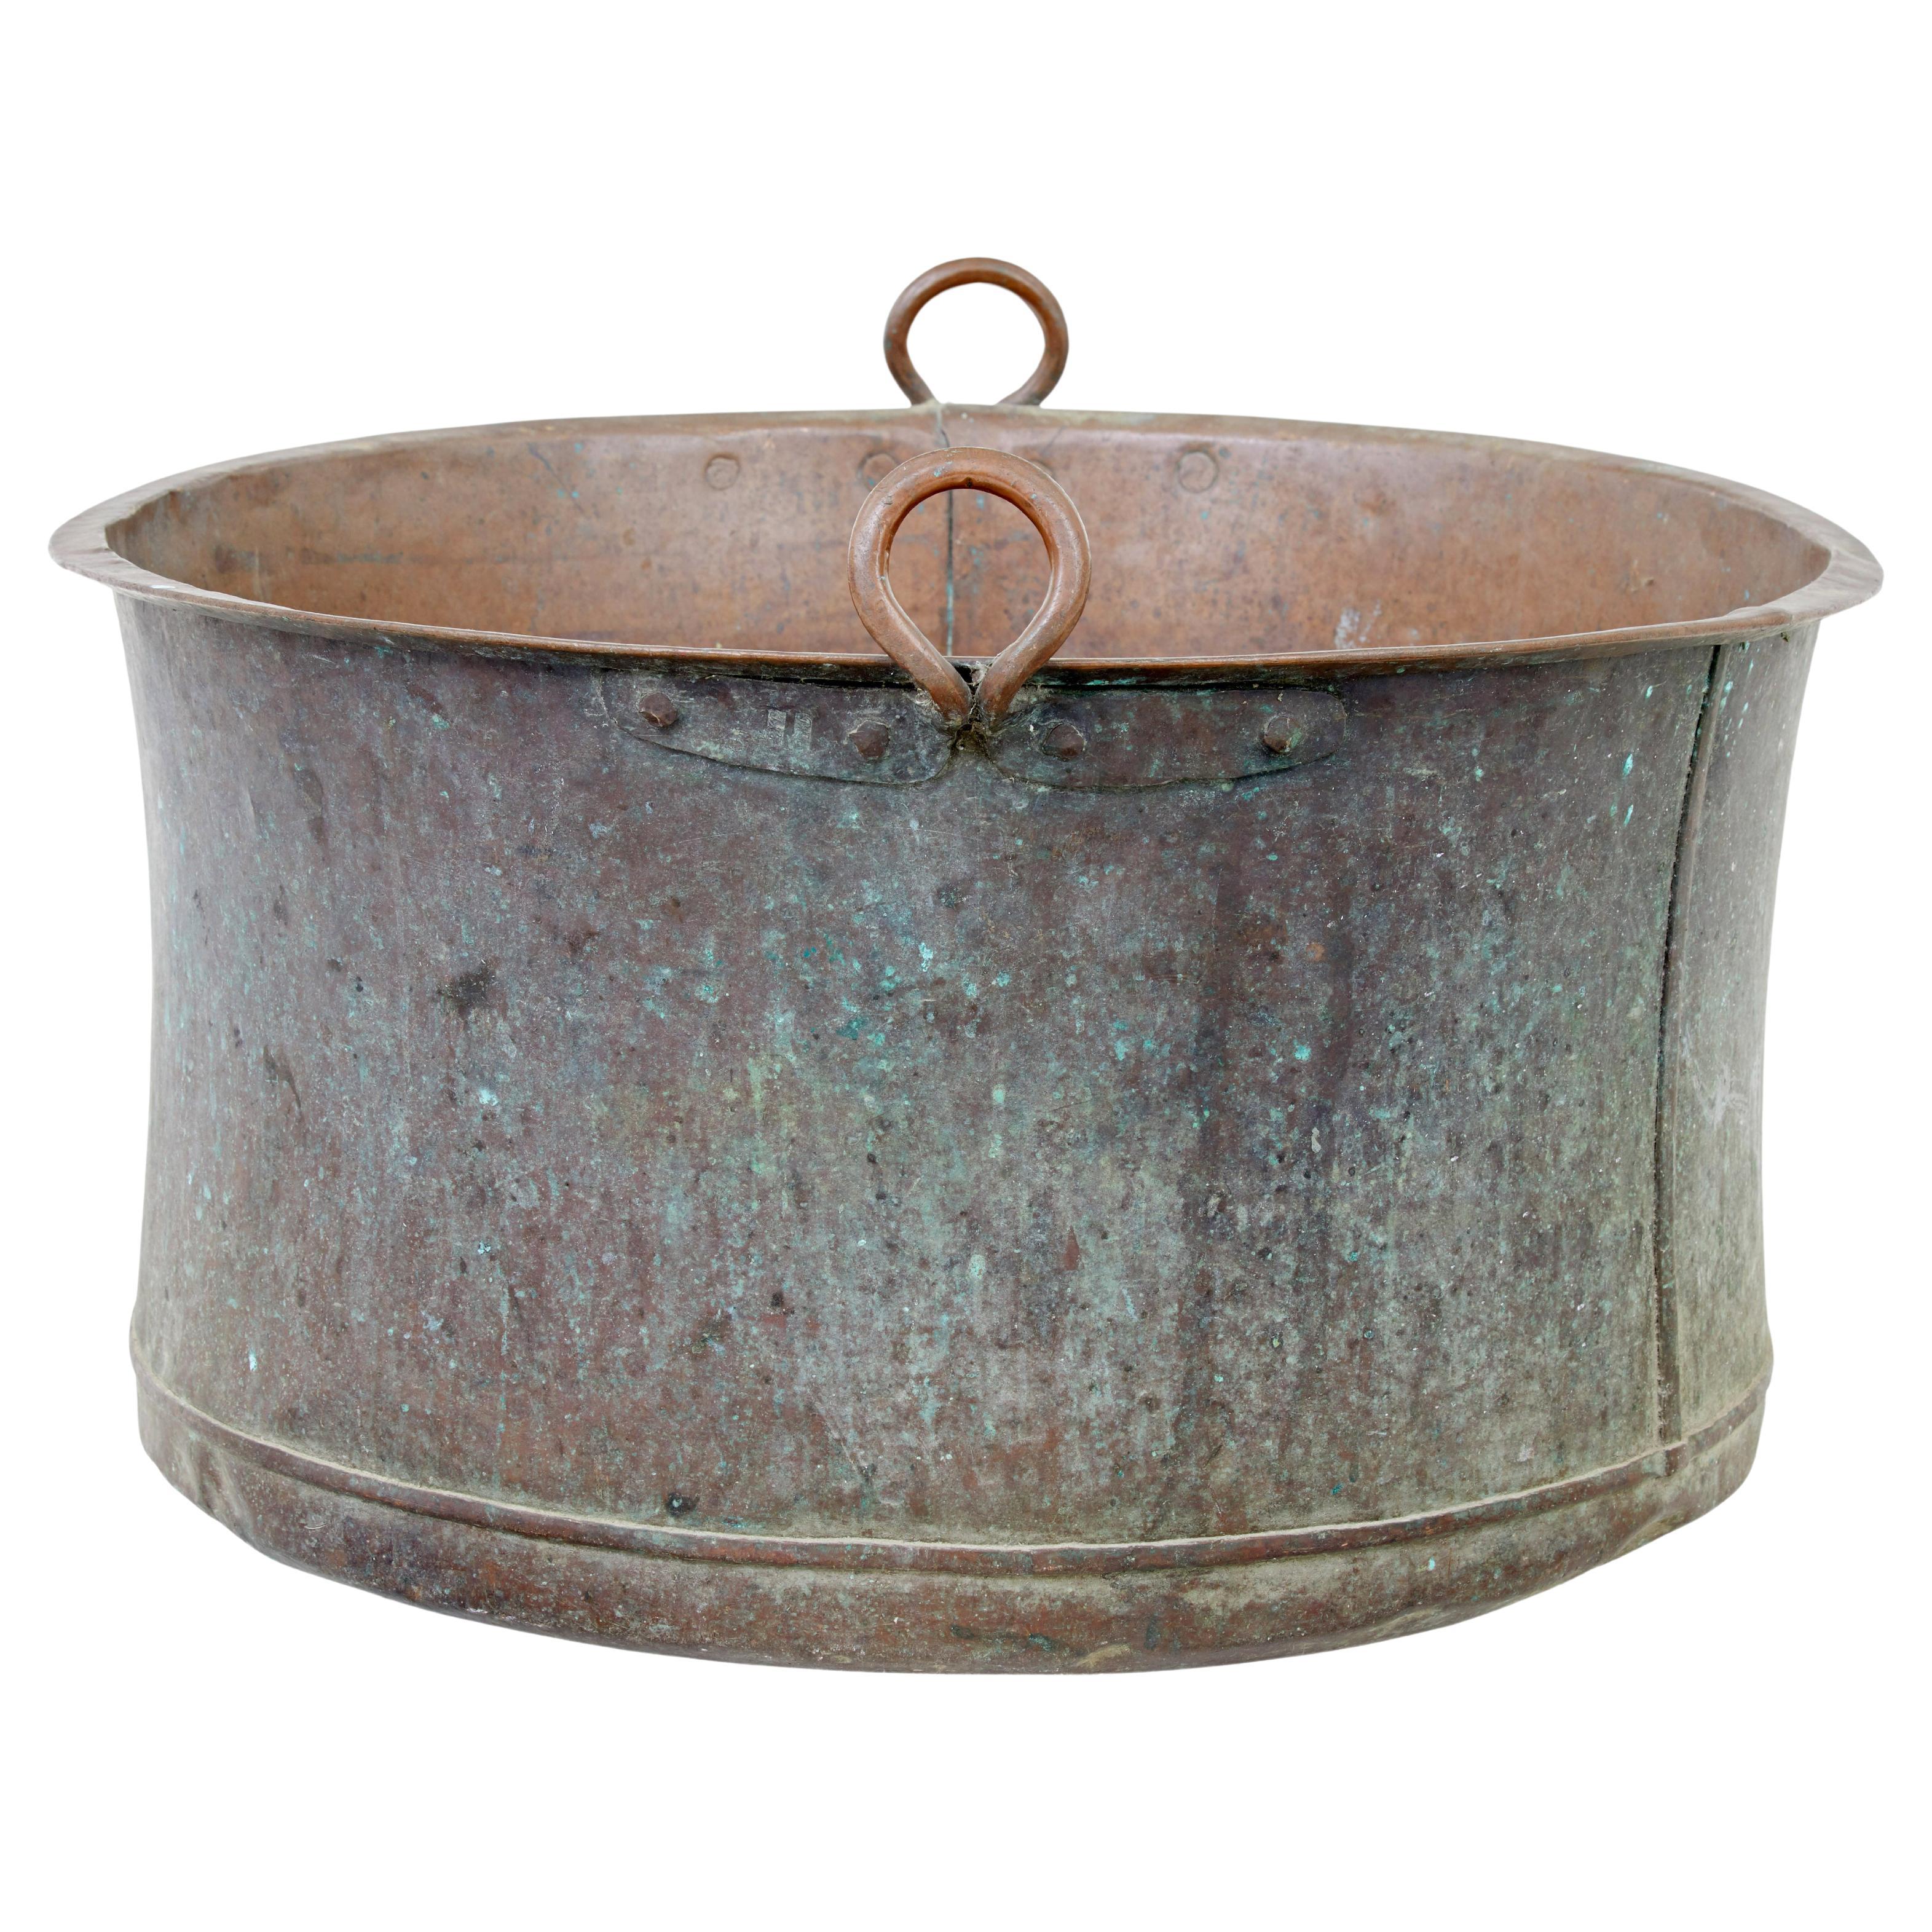 Large 19th century cooking pot with original patina